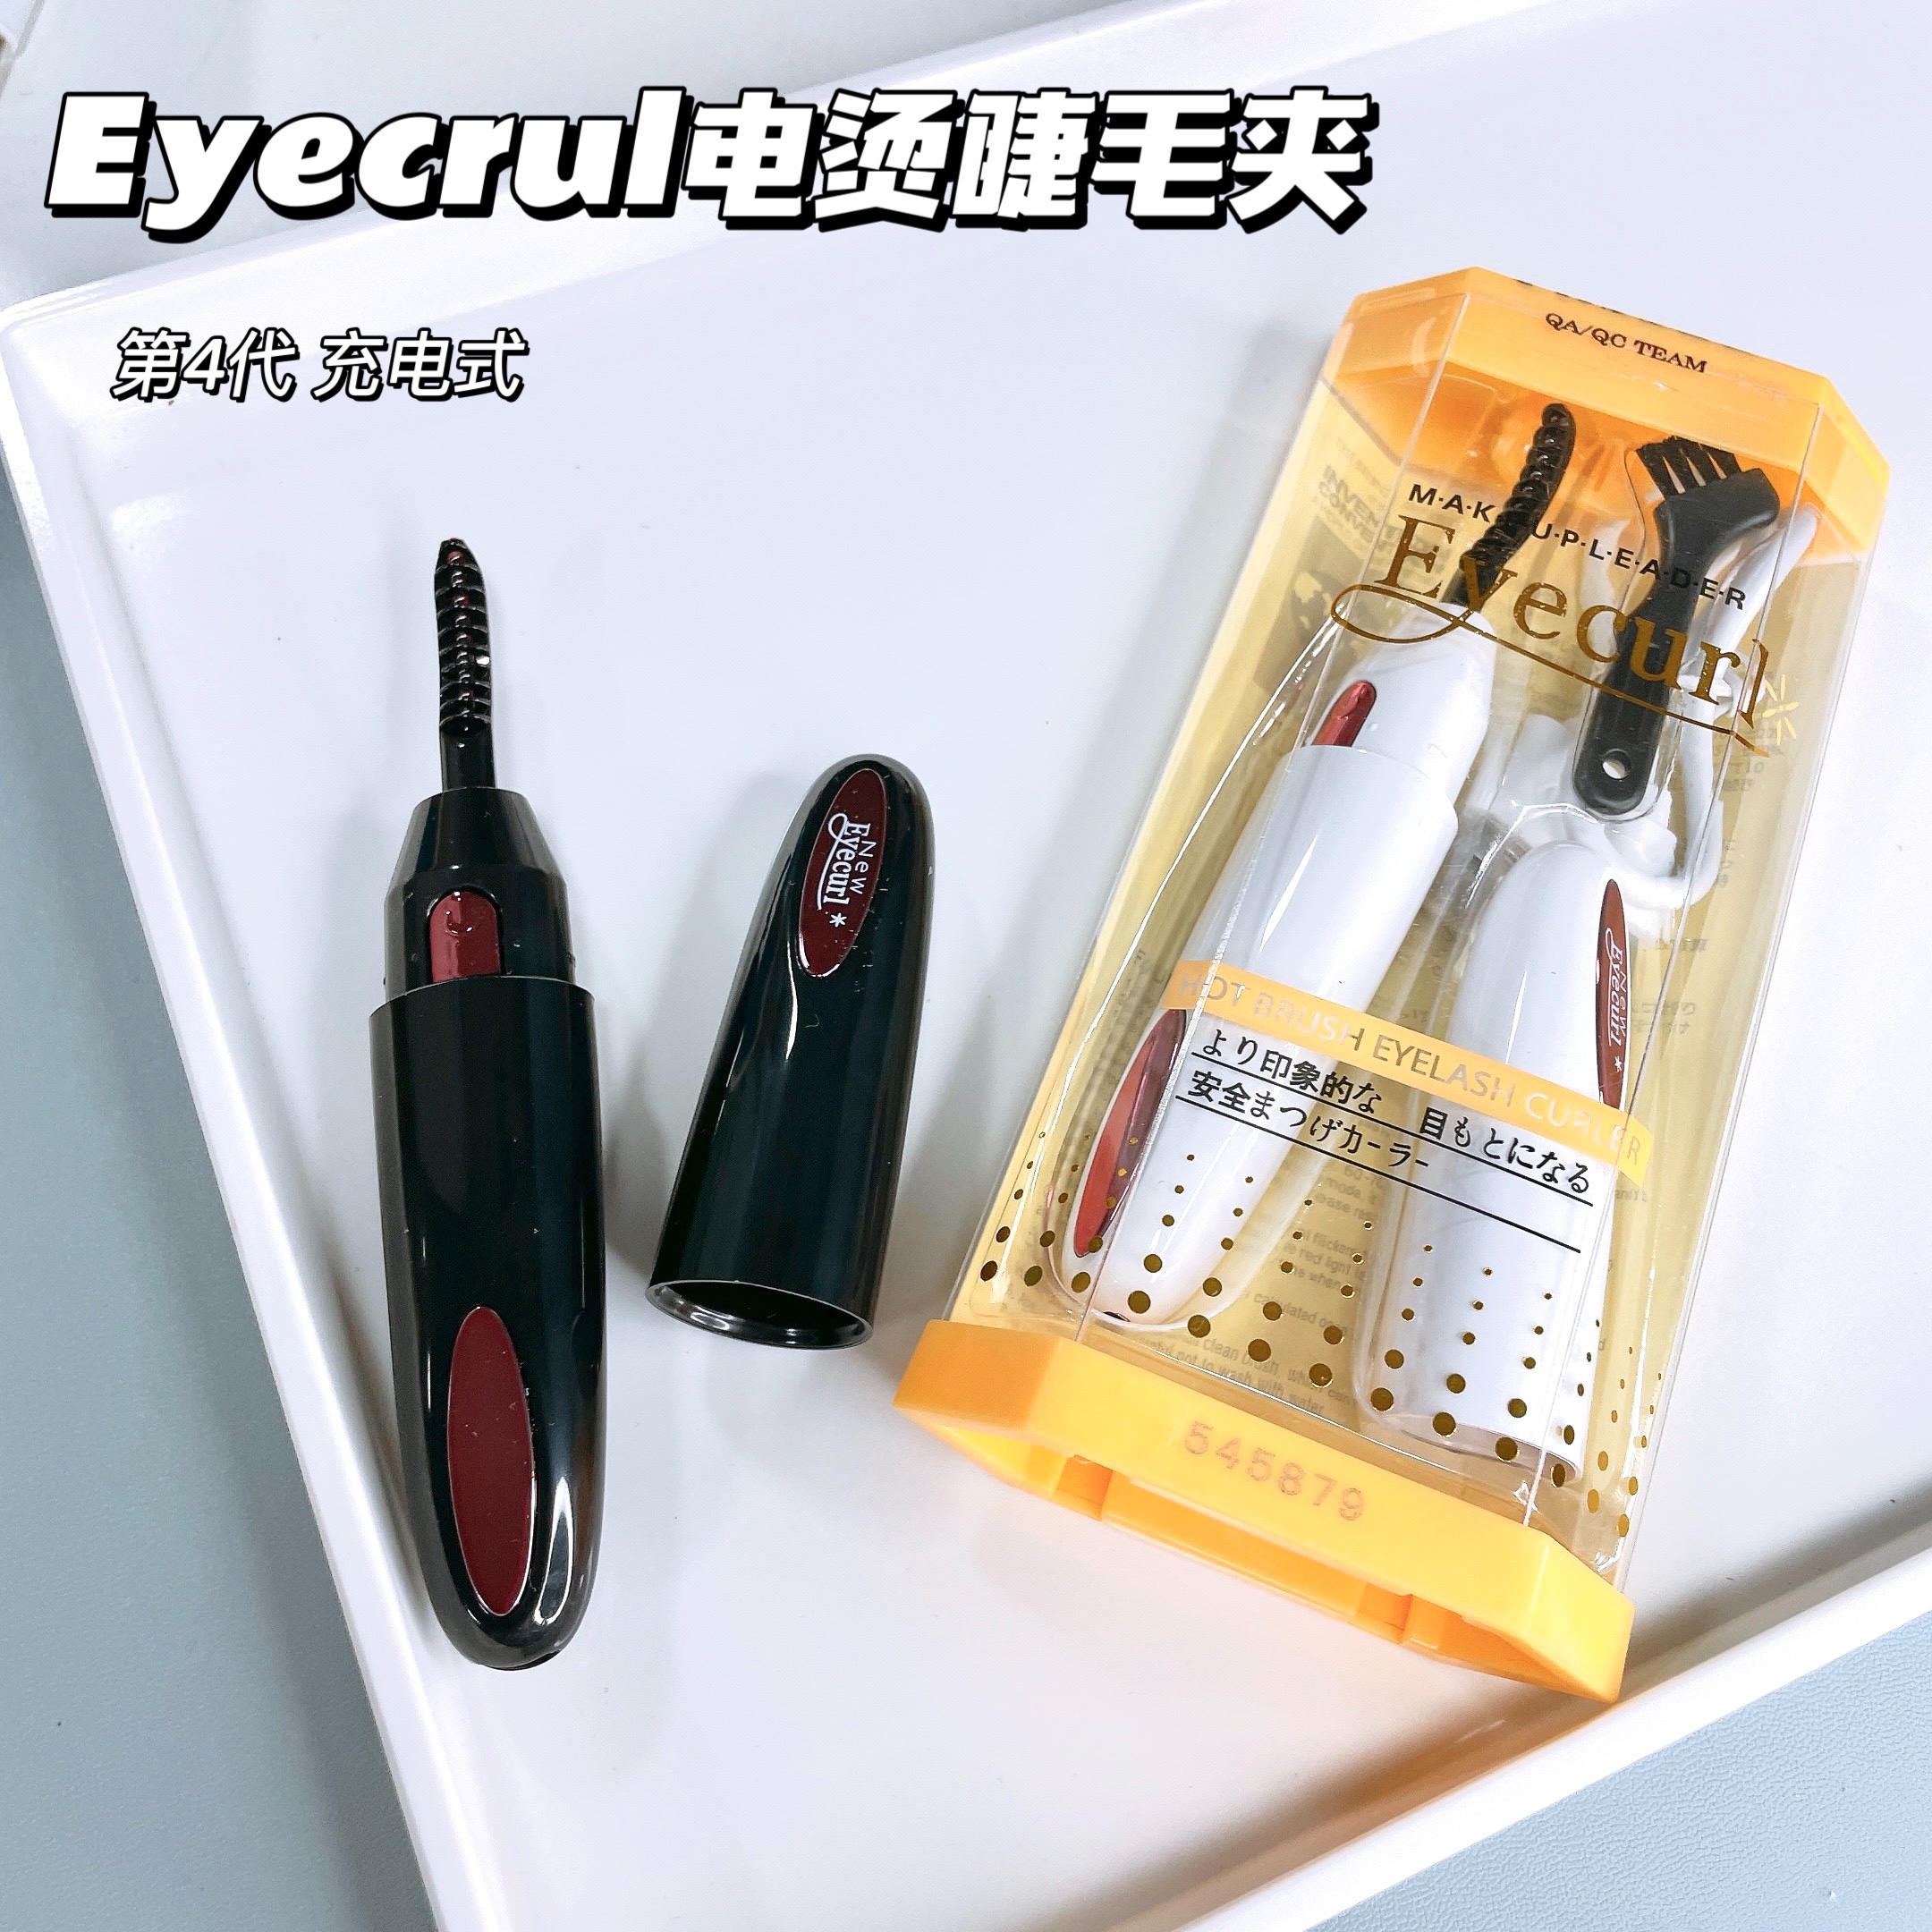 卷翘神器日本Eyecurl电烫睫毛器电加热睫毛夹4代充电式便携持久